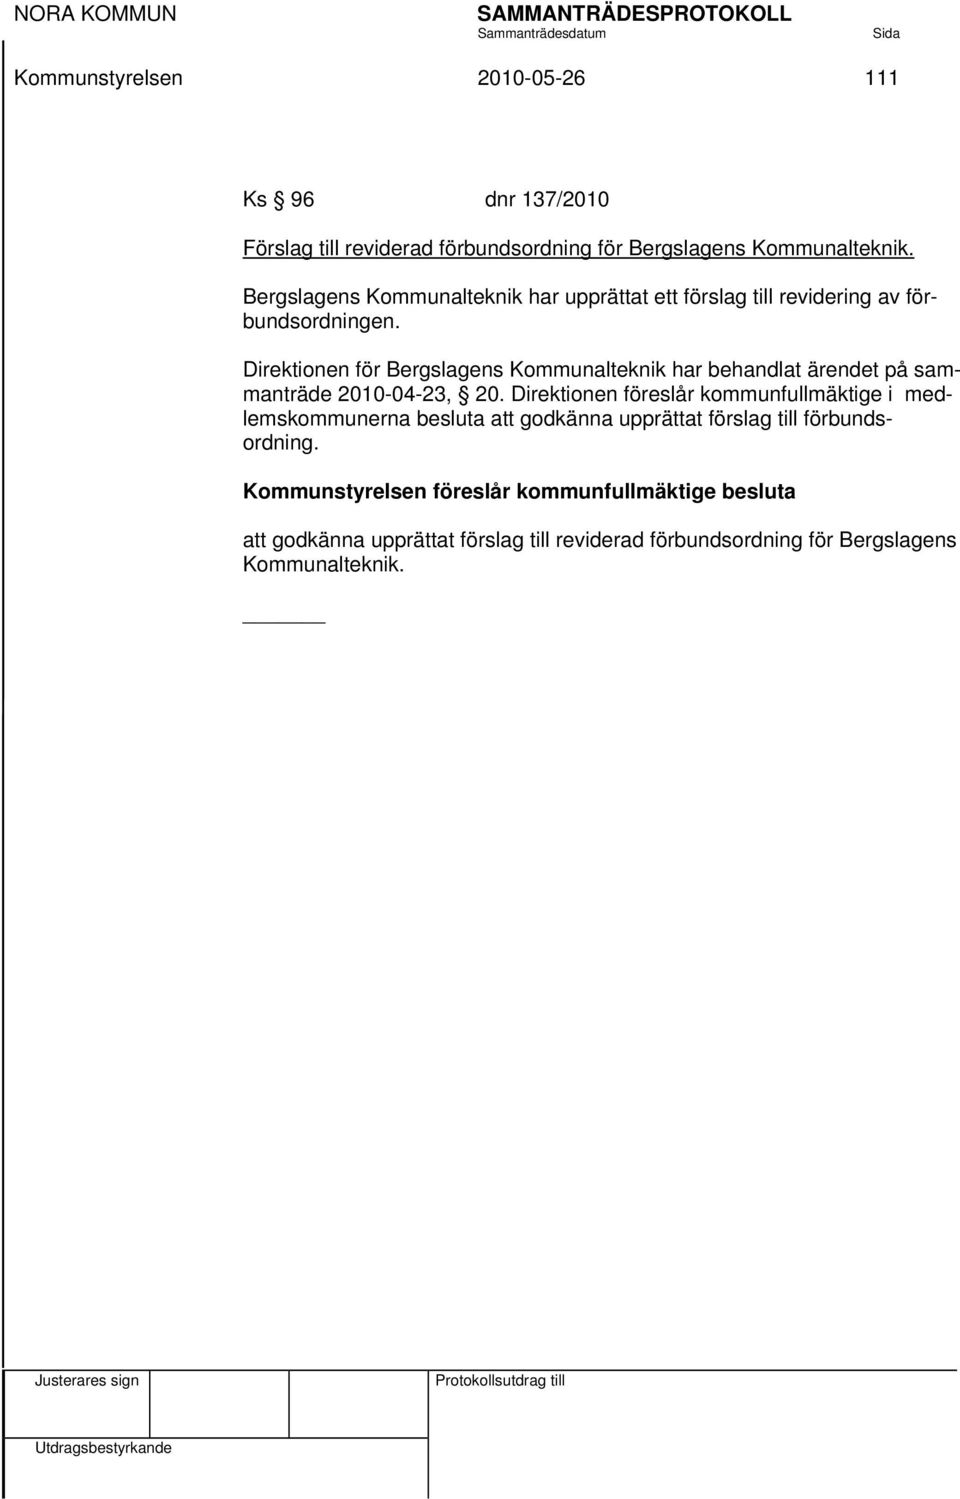 Direktionen för Bergslagens Kommunalteknik har behandlat ärendet på sammanträde 2010-04-23, 20.